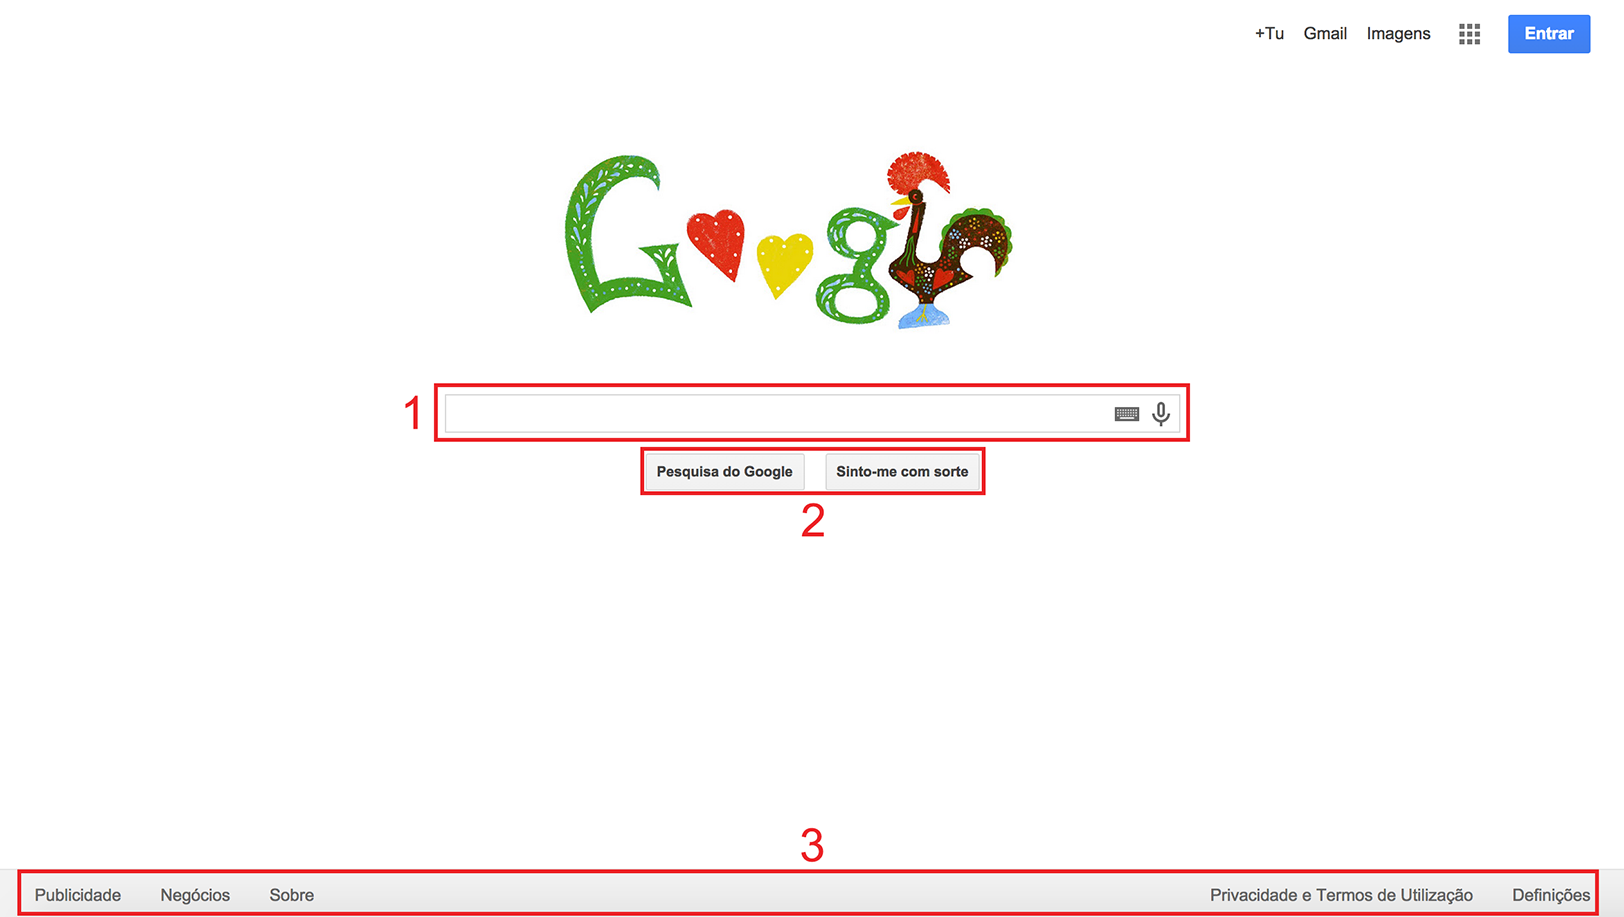 Figura 5 - Ambiente do Google durante uma data comemorativa.